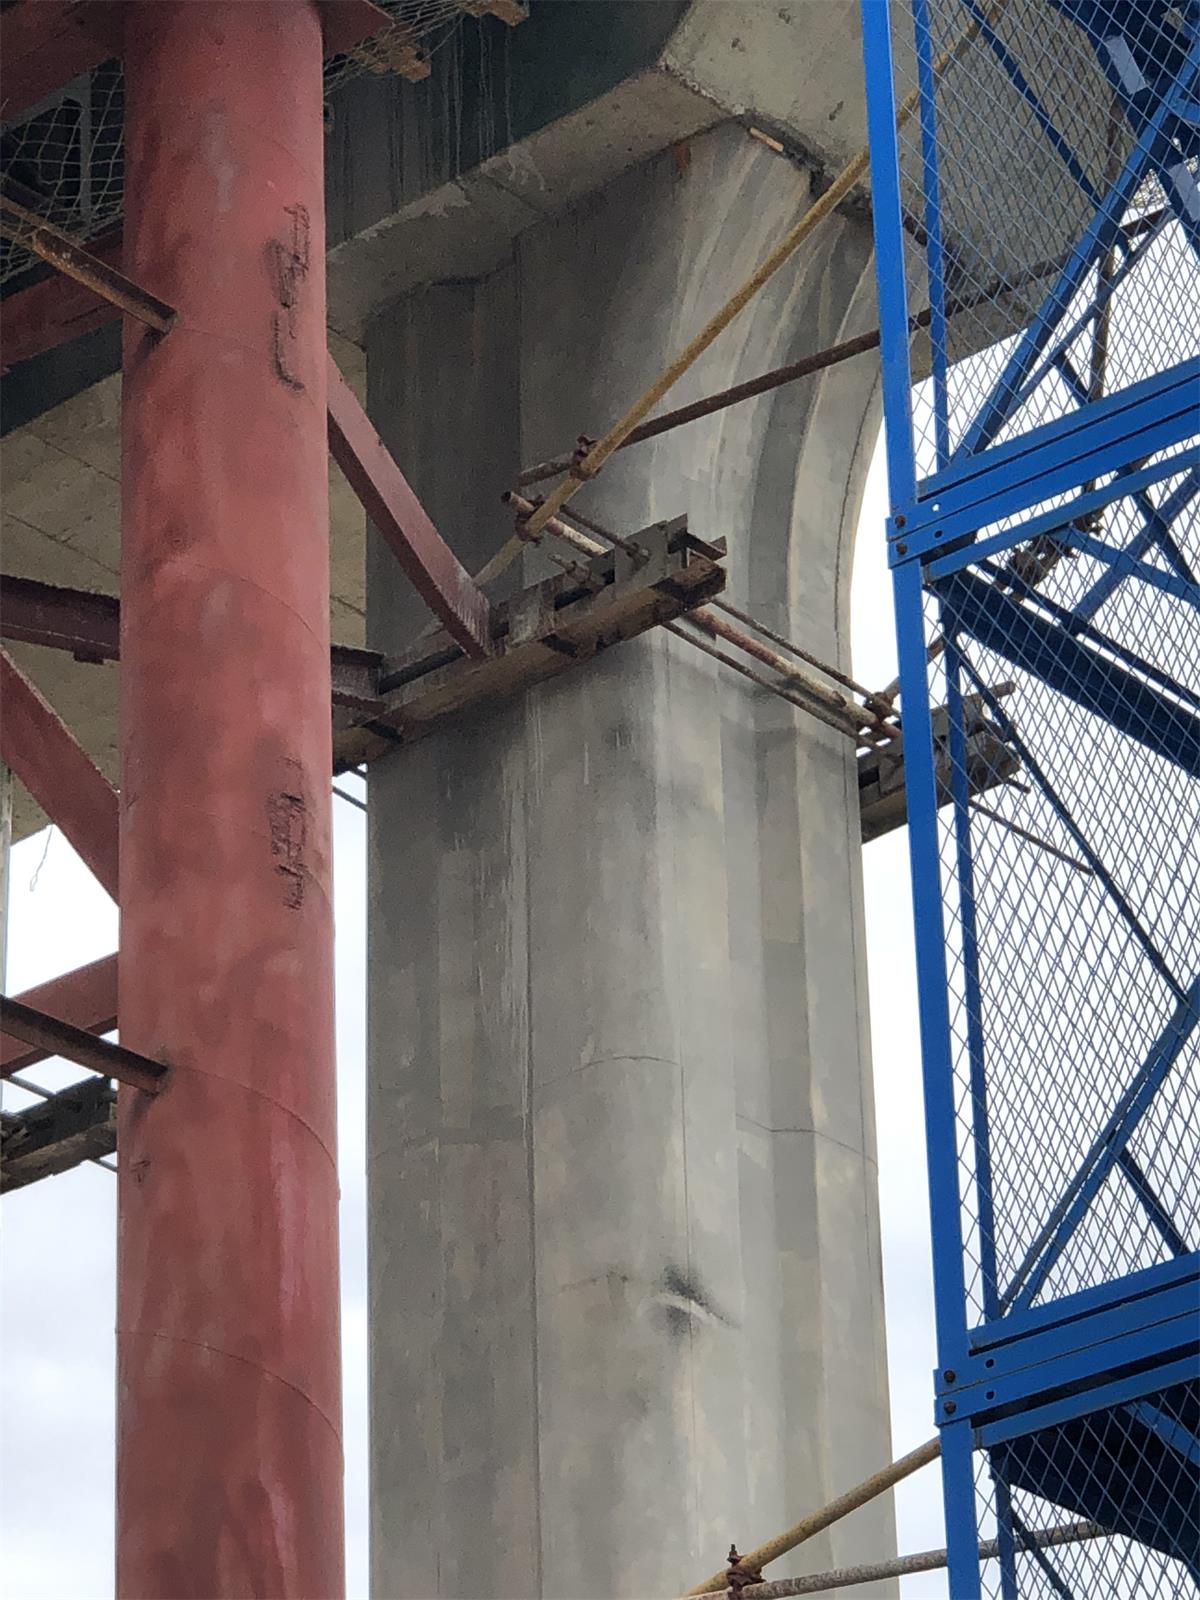 湖南浩润路桥机械有限公司,郴州公路钢桥设计制造加工,郴州钢管桩桥梁设计制造加工